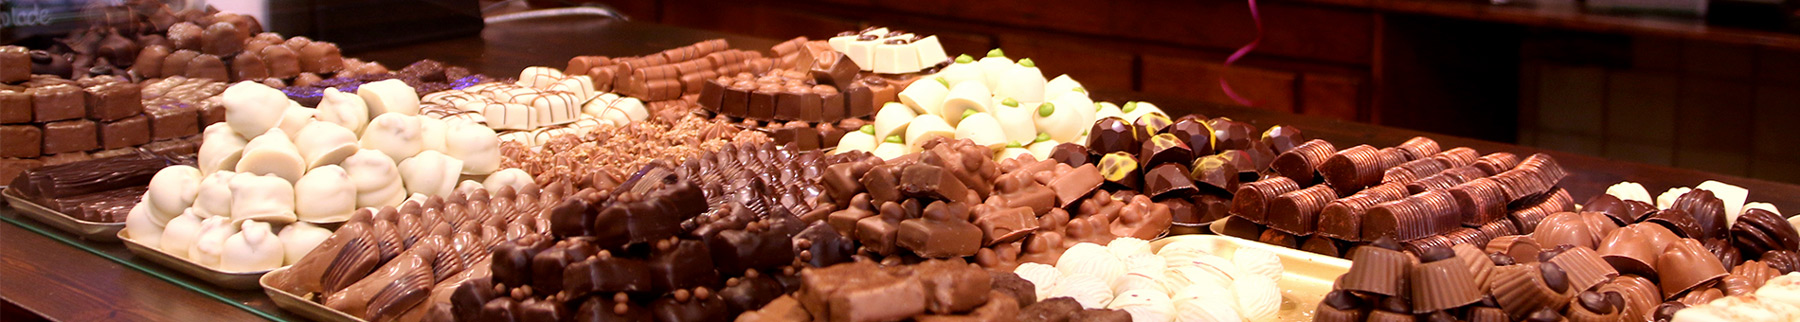 Heerlijke bonbons en handgemaakte chocolade